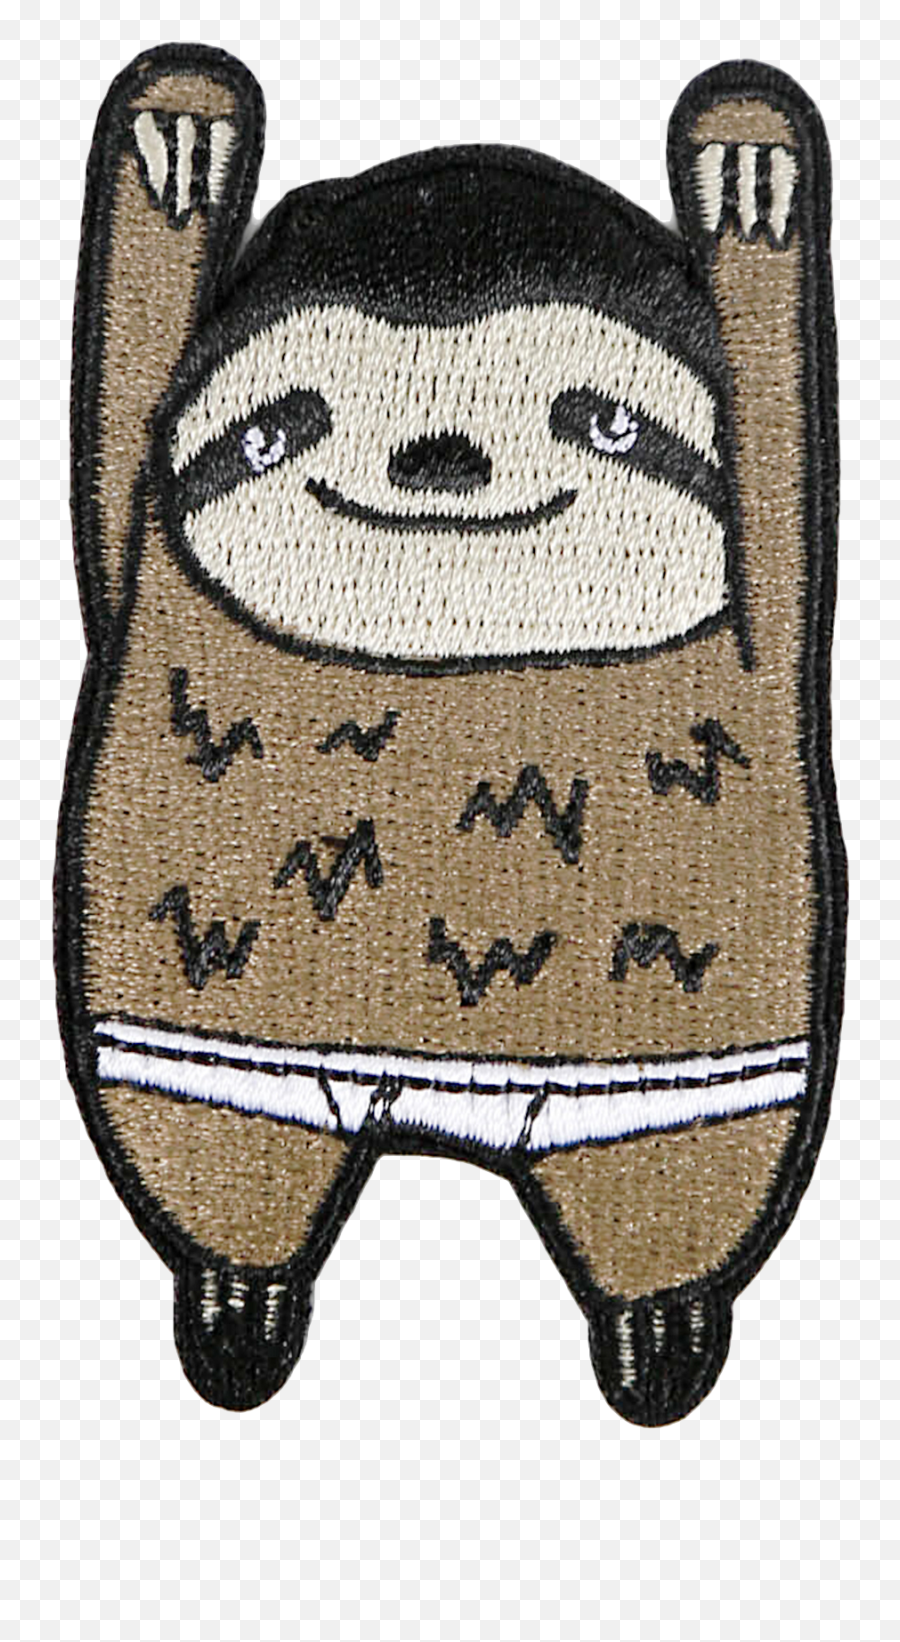 Bb Sloth Patch - Sloth Patch Emoji,Sloth Emoticon Facebook